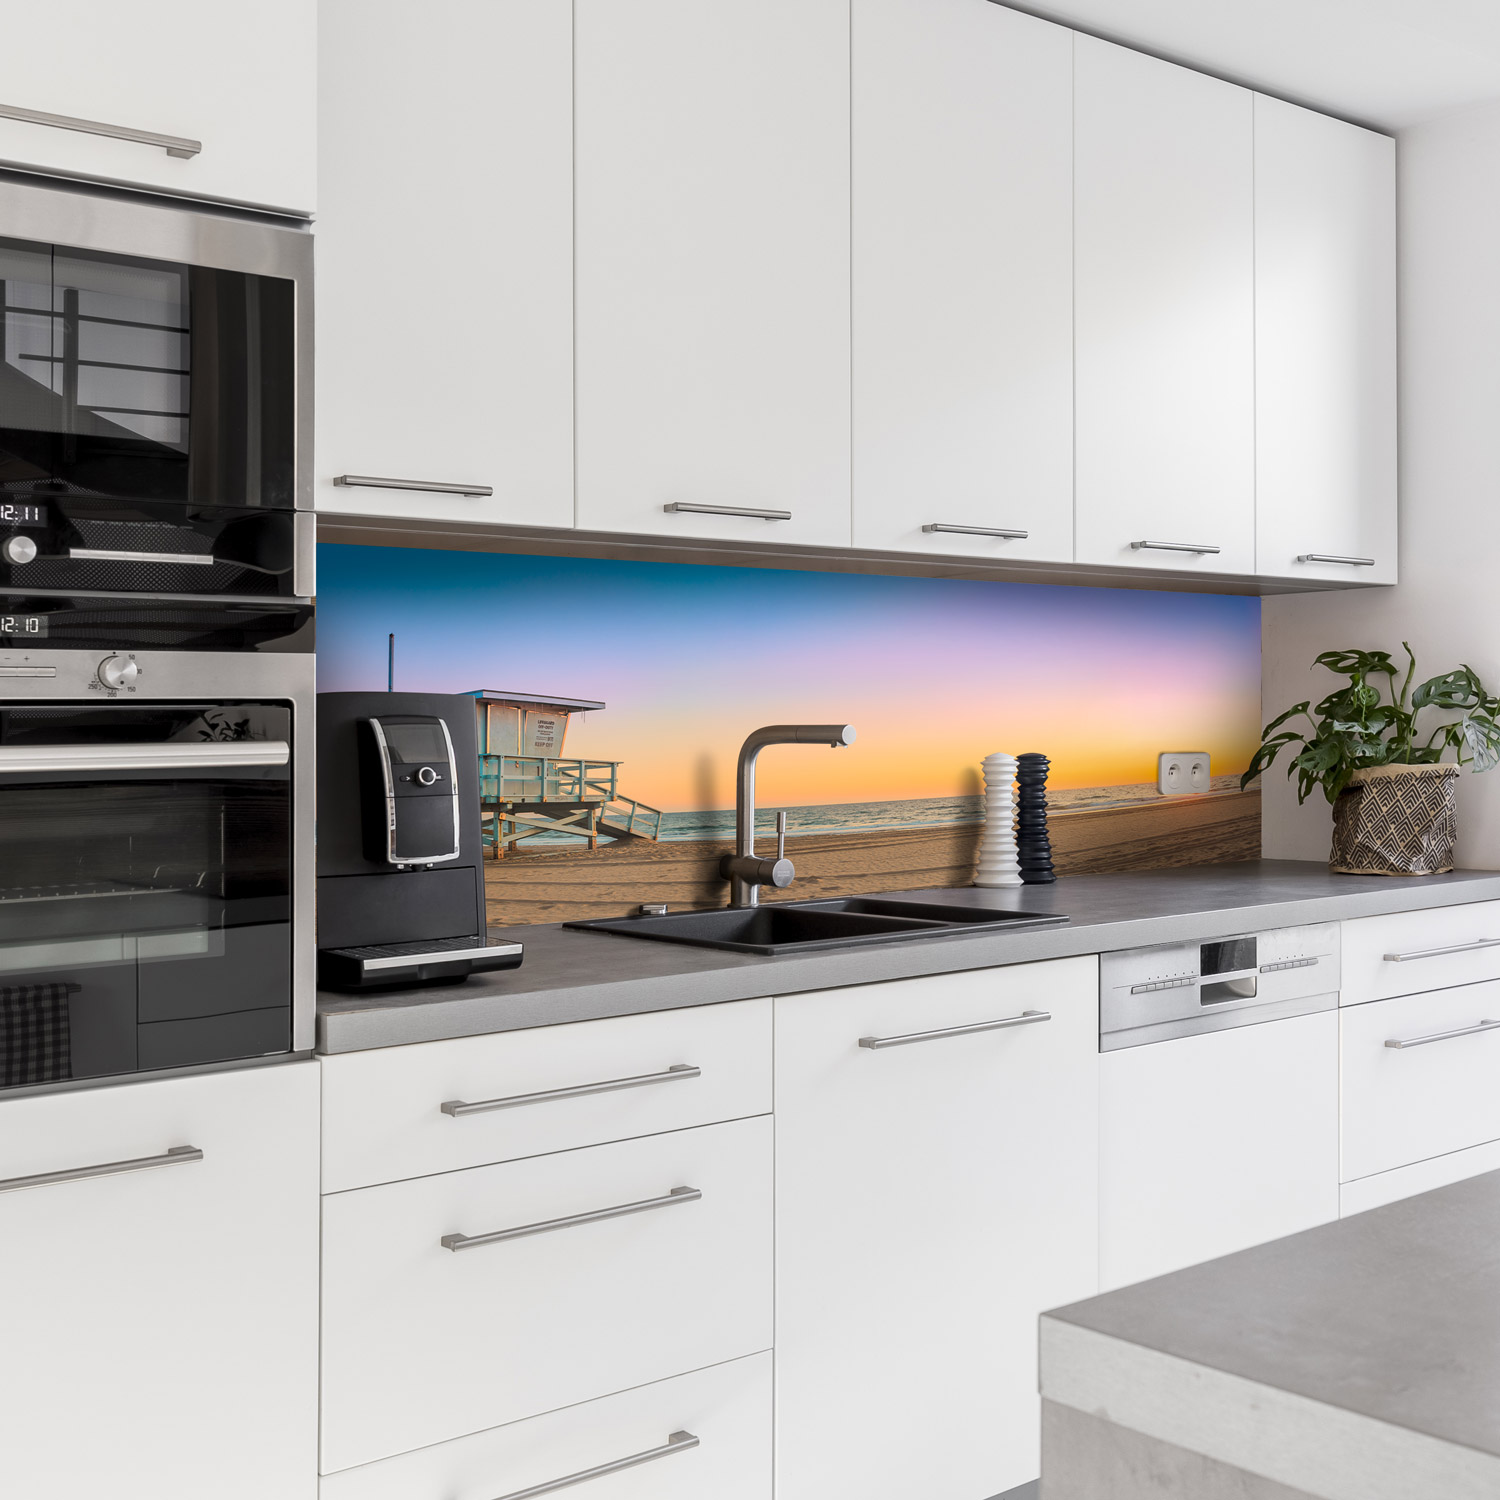 Küchenrückwand mit Strand V4 Motiv als Fliesenersatz und Spritzschutz